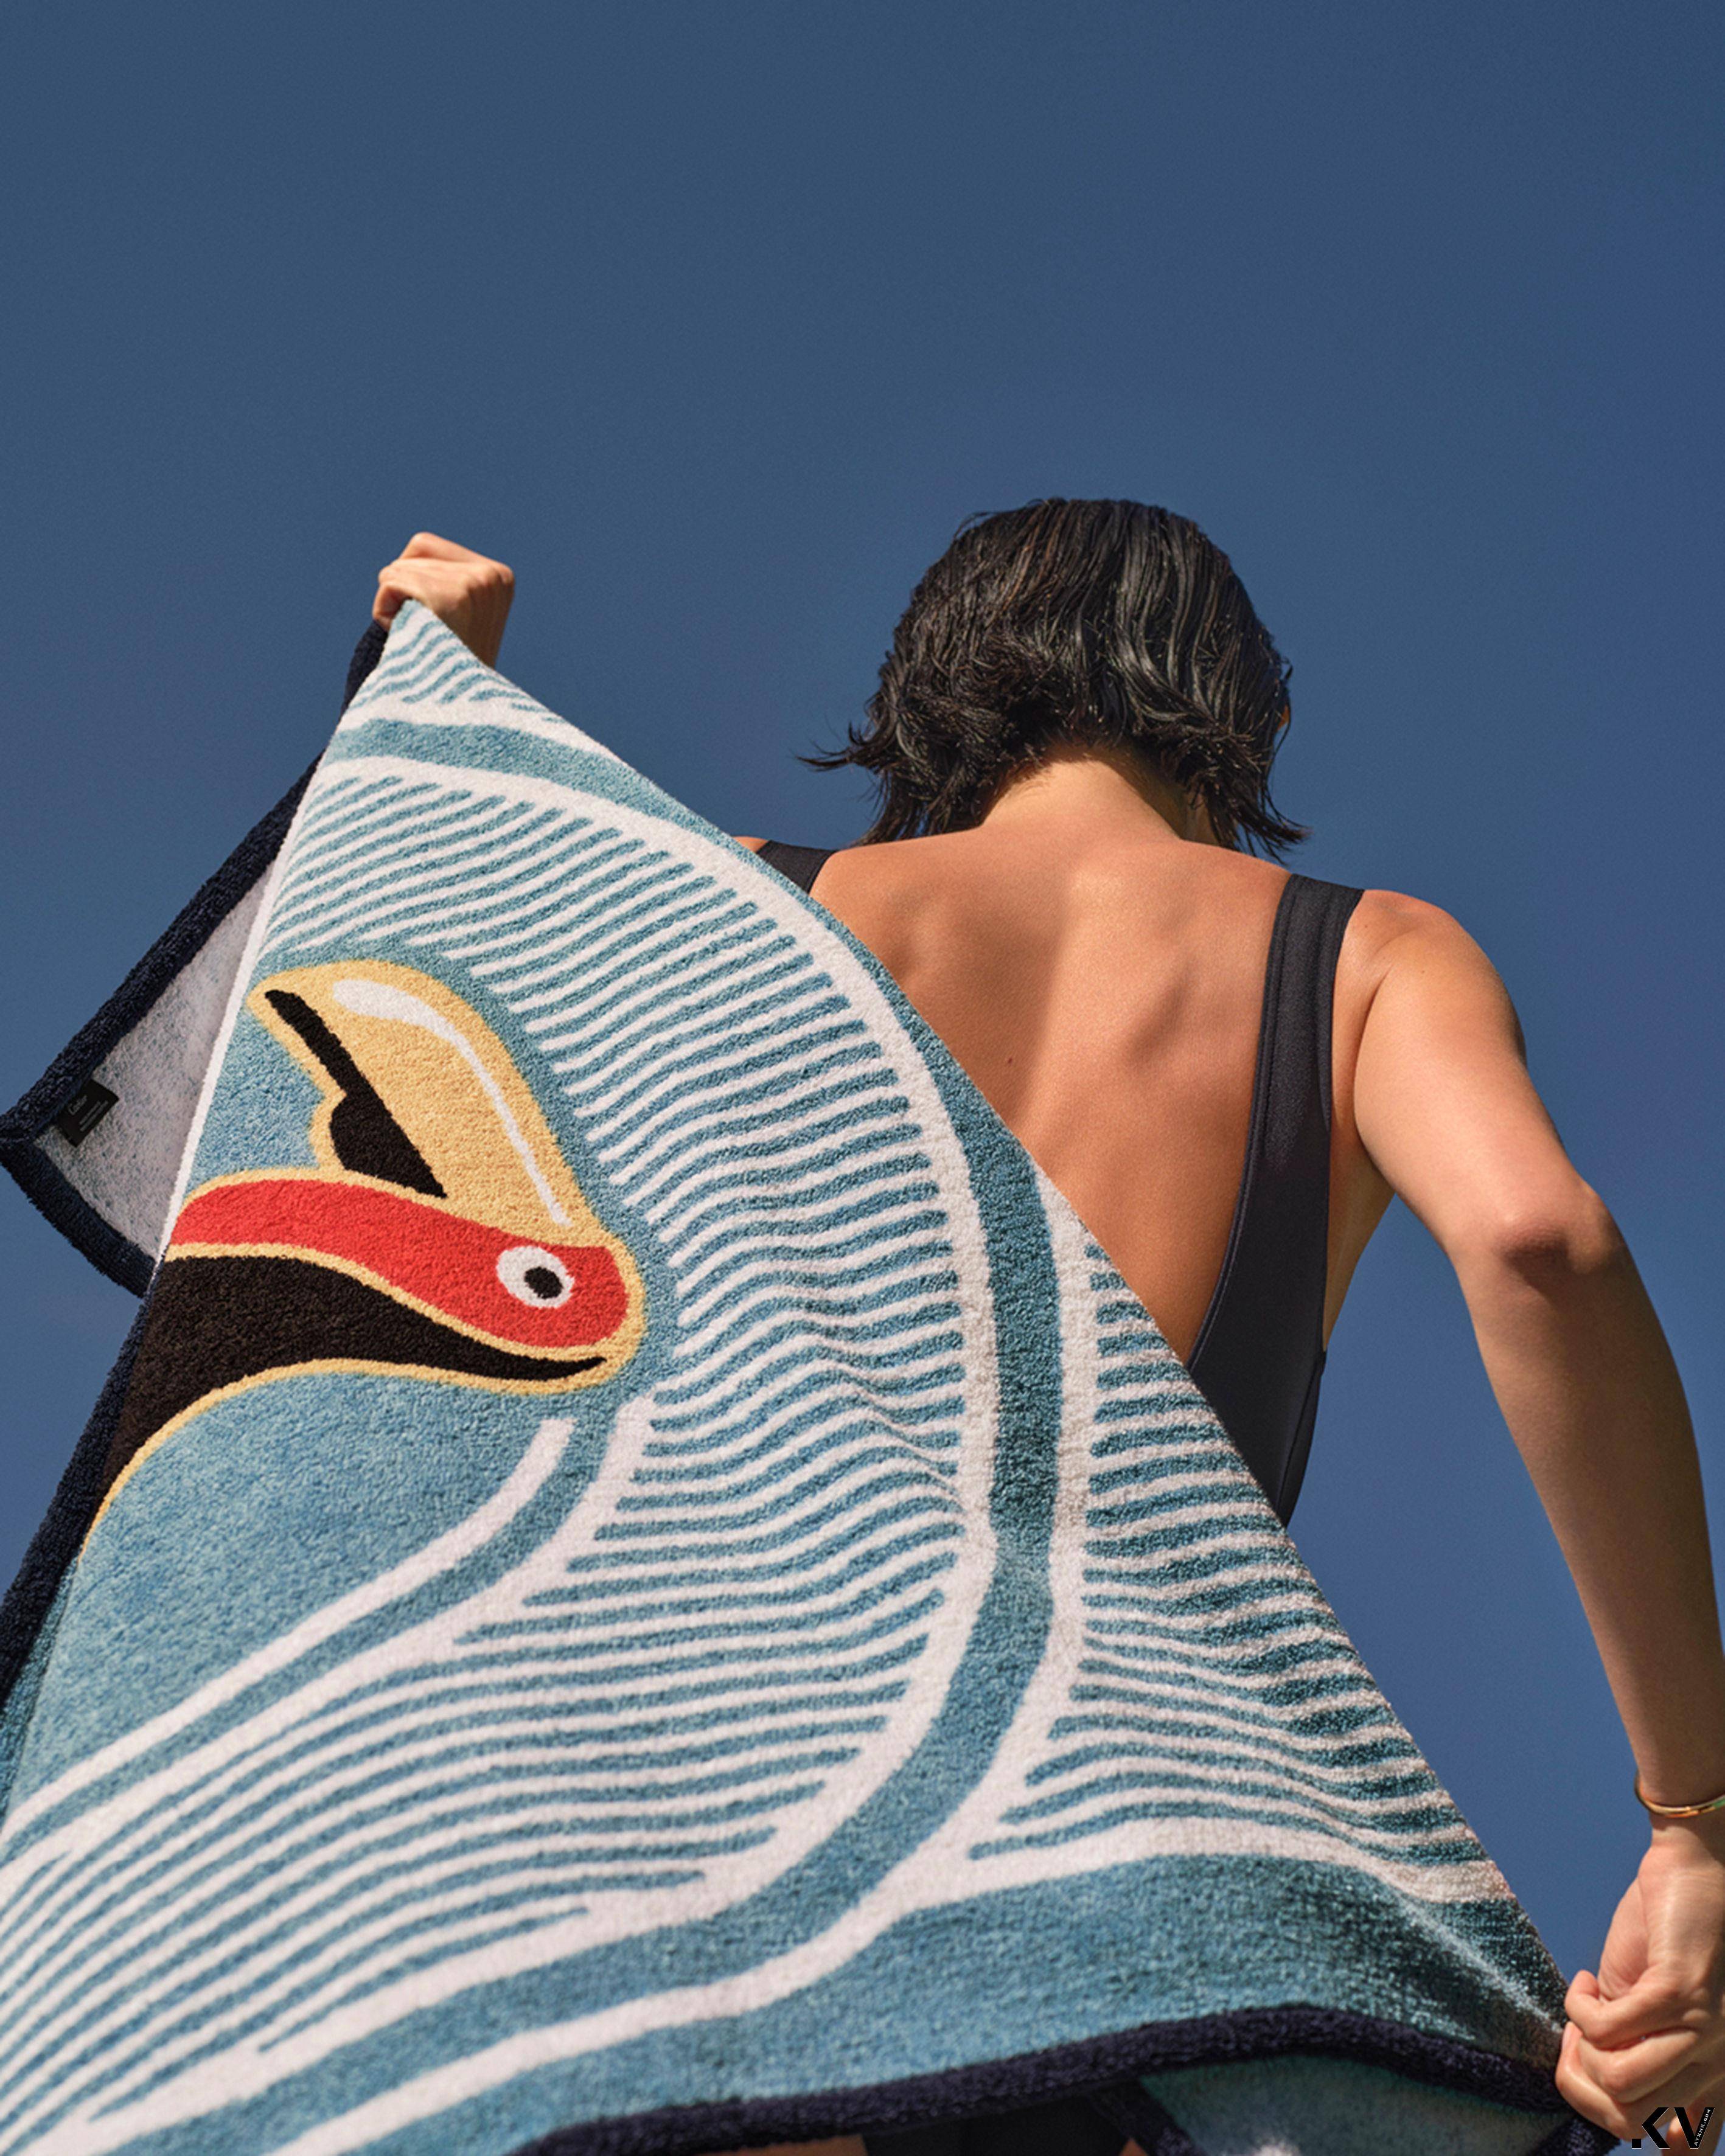 卡地亚巨嘴鸟、美洲豹海滩巾好时髦　连瓷器都洋溢夏日欢乐气息 奢侈品牌 图1张